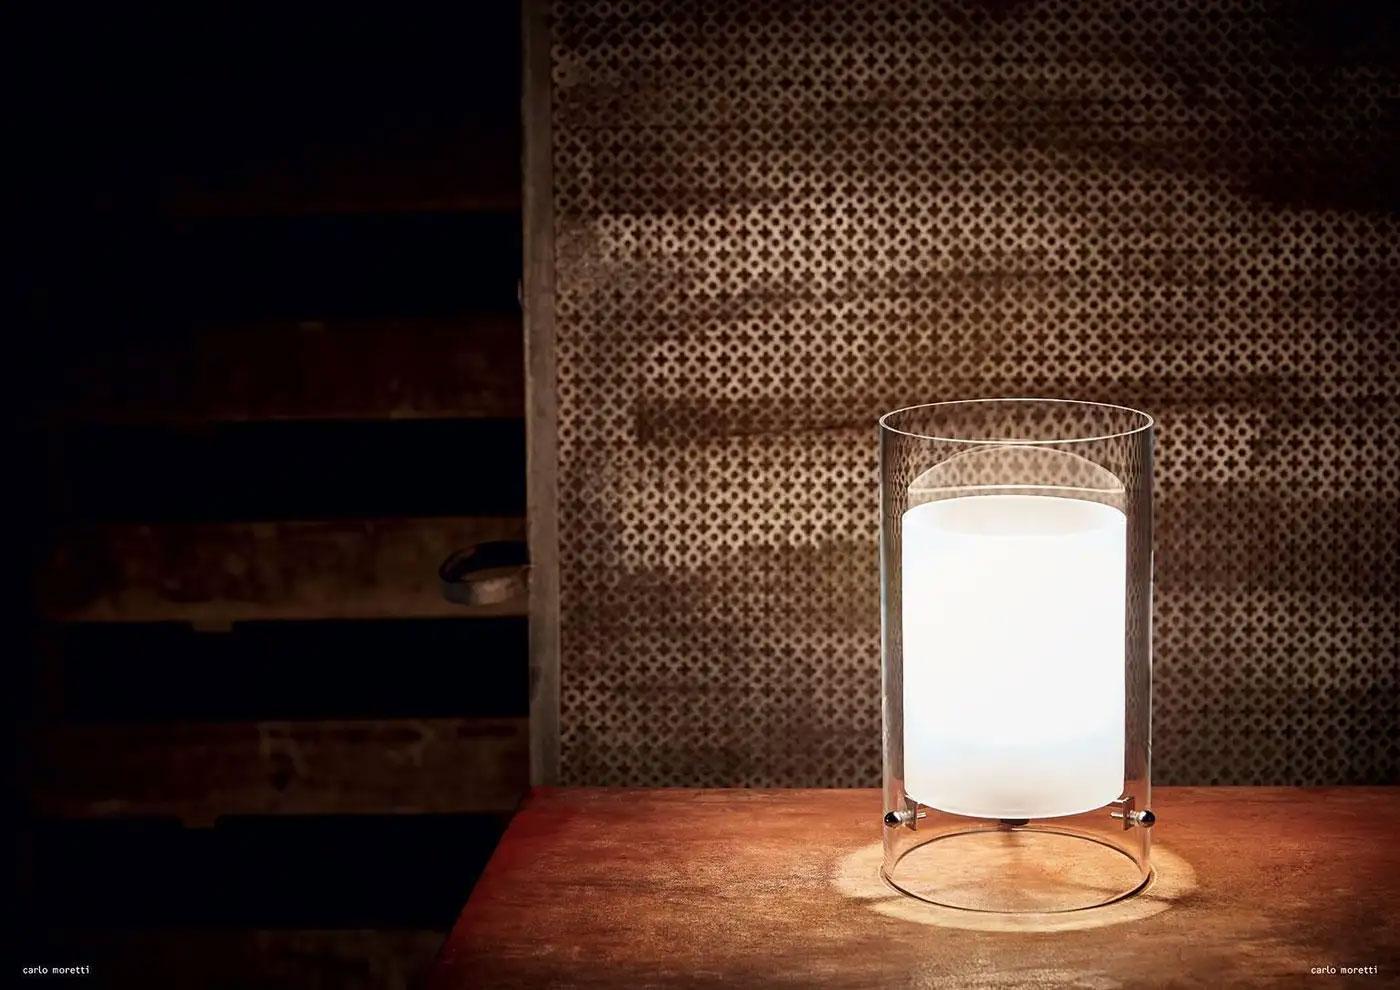 Lampe de table en verre clair soufflé à la bouche de Murano avec fixation en laiton chromé et cylindres en verre transparent et opalin. La lampe a été conçue en 1993 par Carlo Moretti.

Ampoule à incandescence de 60 watts, douille écolamp de 42